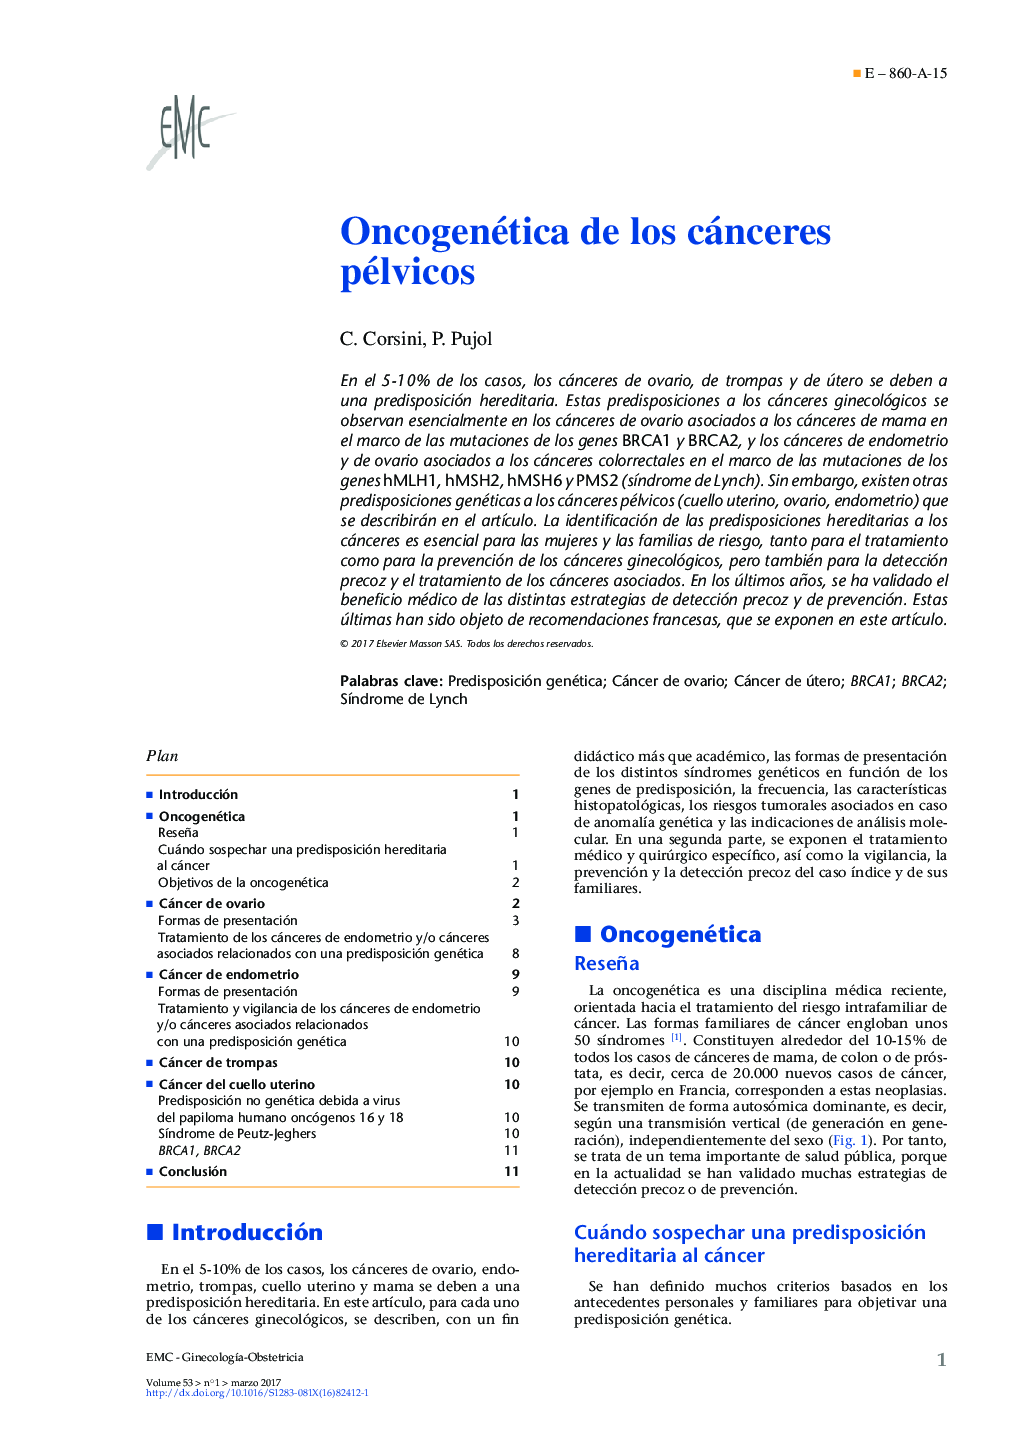 Oncogenética de los cánceres pélvicos